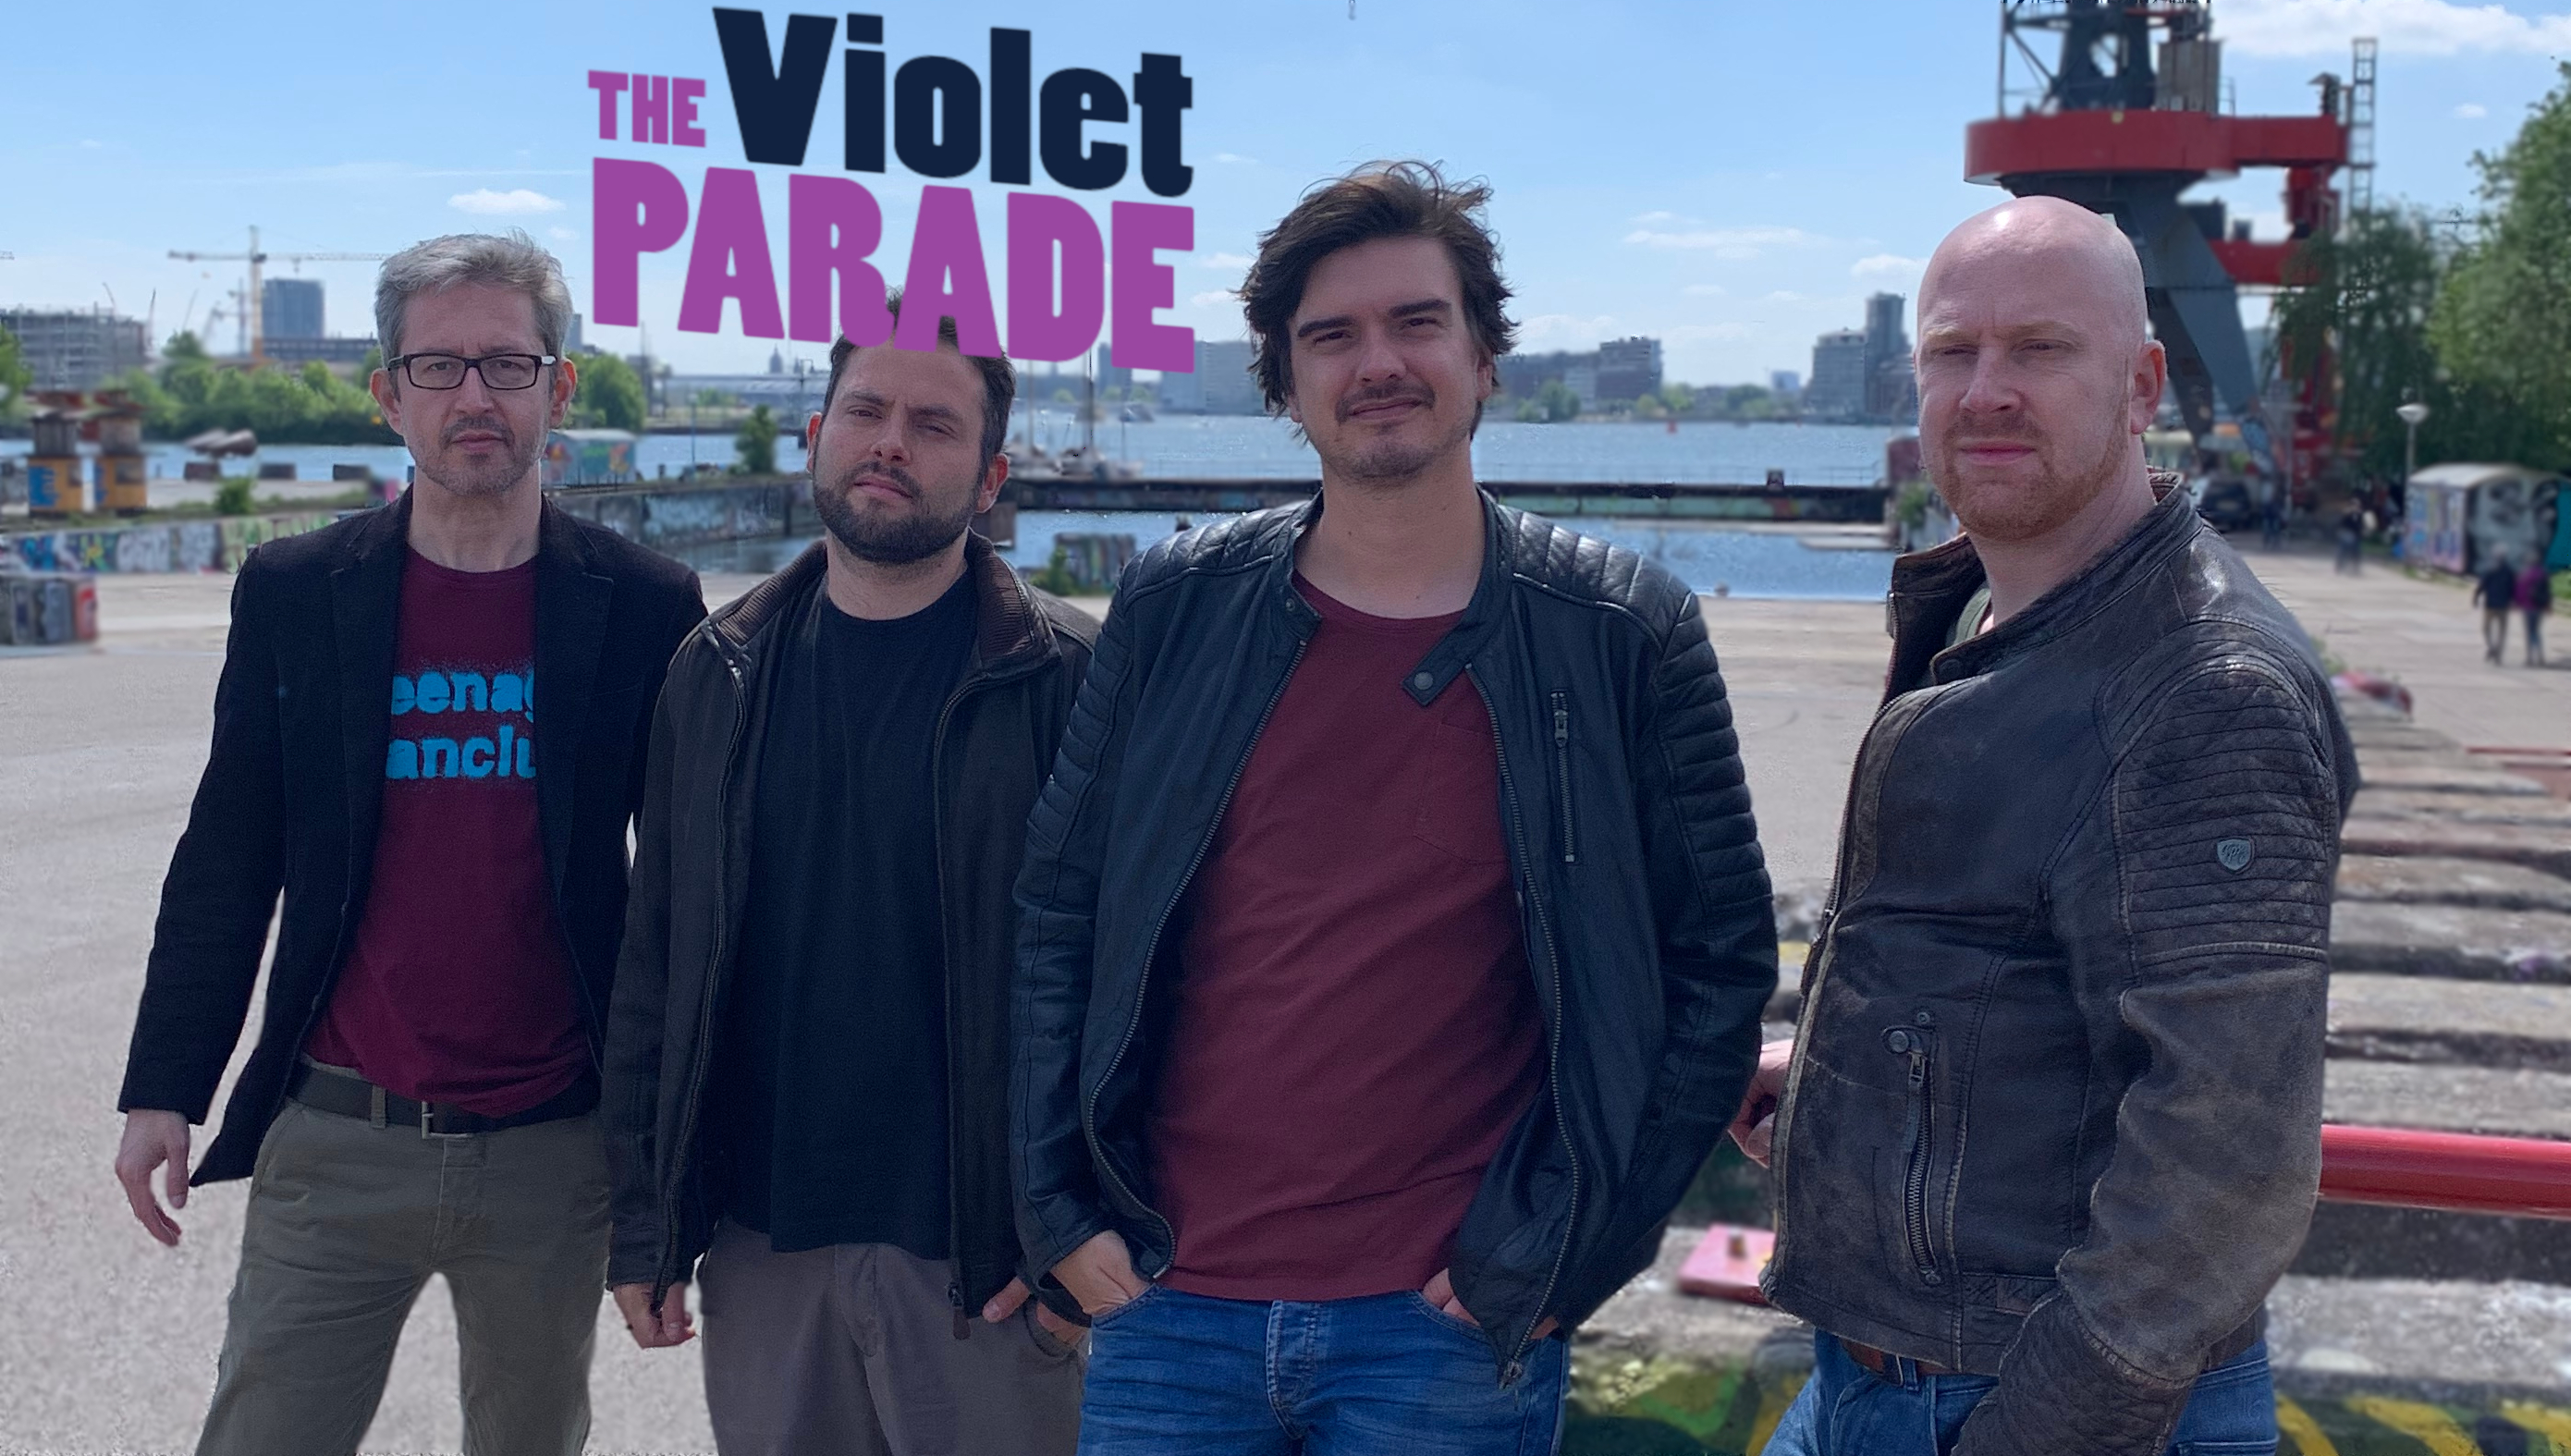 The Violet Parade